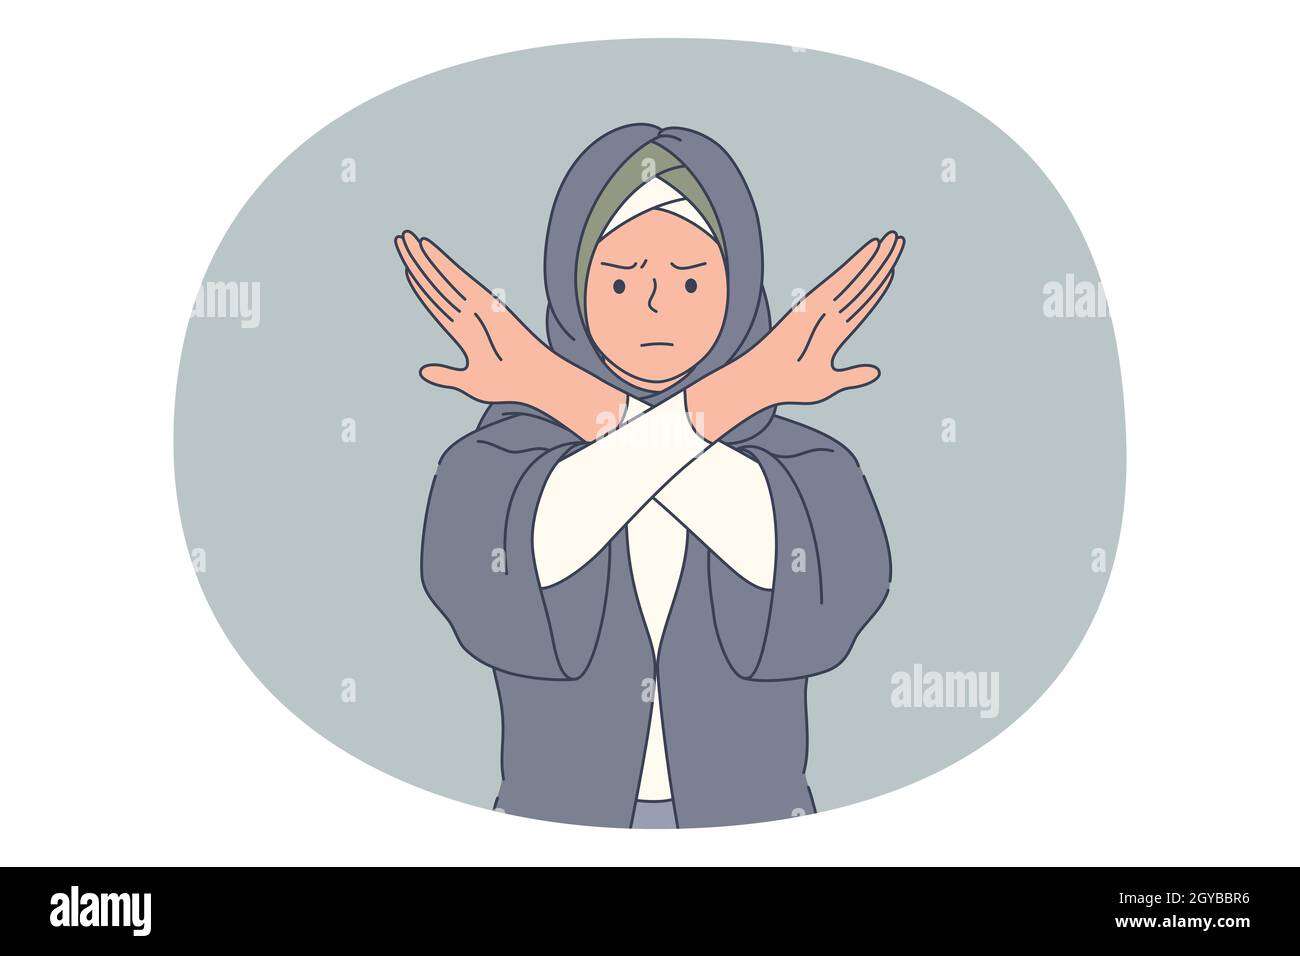 Stopp, Ablehnung, Verbotskonzept. Muslimische verärgerte Frau in traditioneller Kleidung, die Hände kreuzt und Zeichen des Verbietens zeigt. Ablehnen ablehnen d Stockfoto